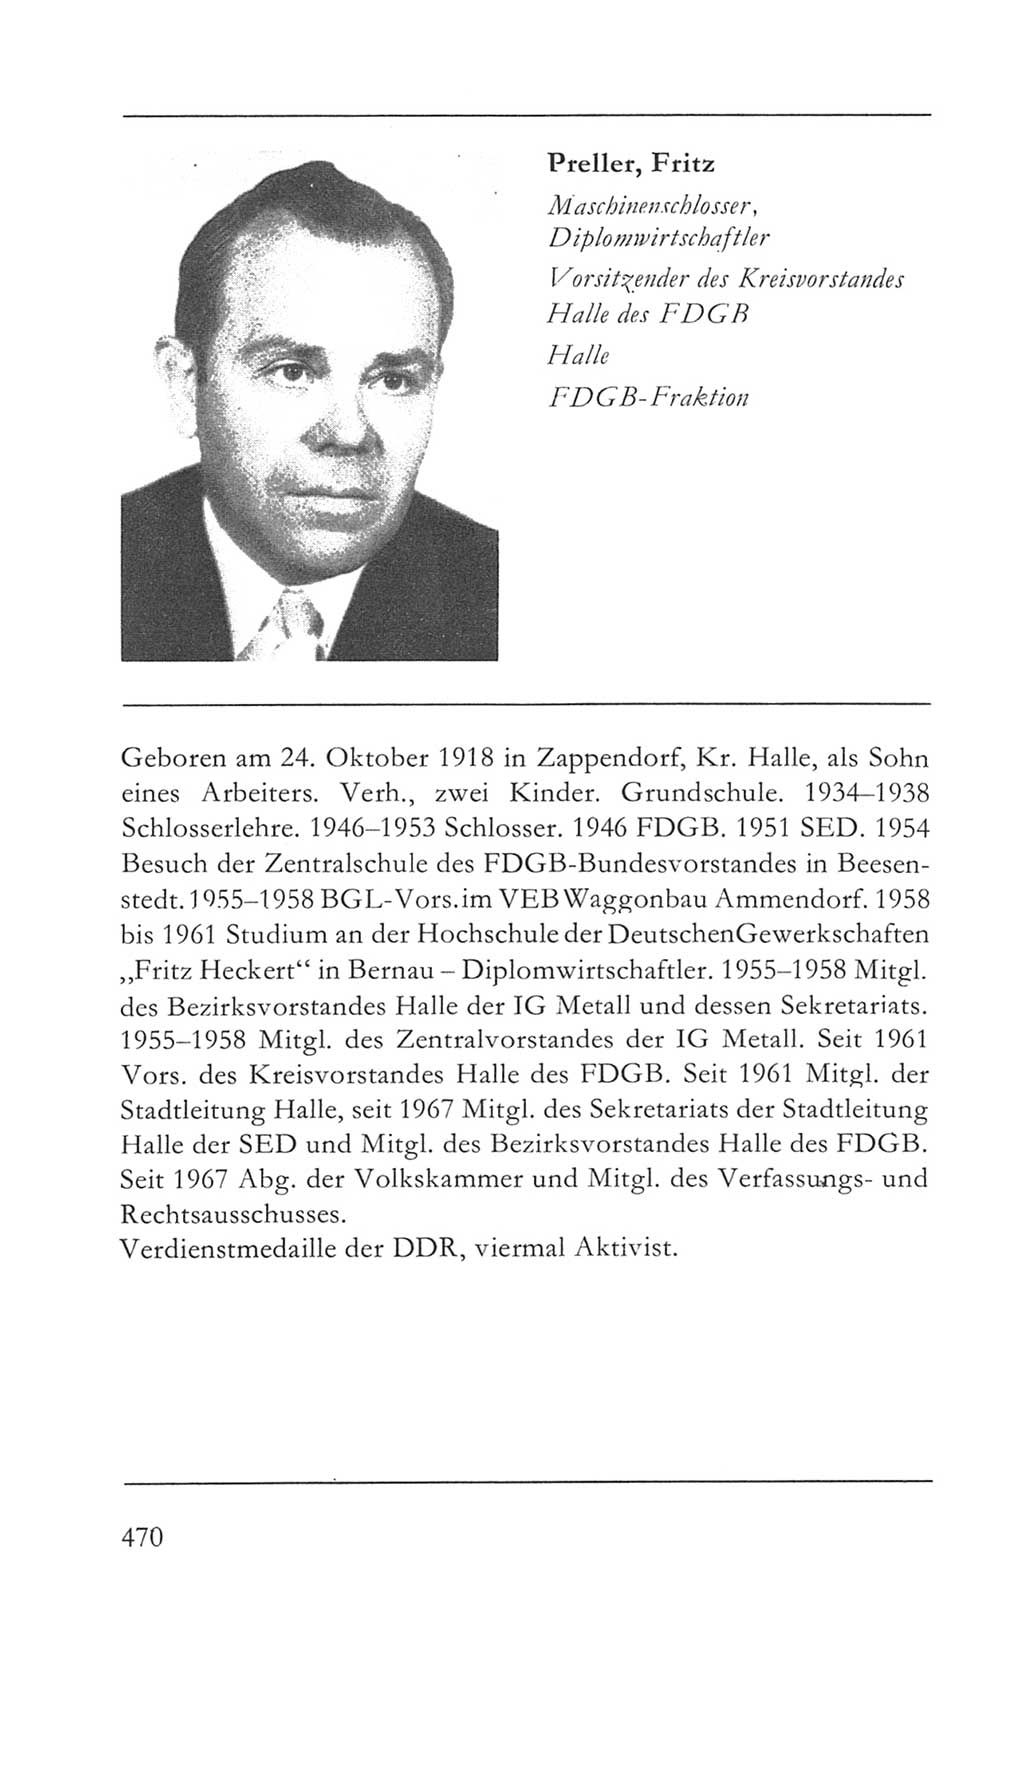 Volkskammer (VK) der Deutschen Demokratischen Republik (DDR) 5. Wahlperiode 1967-1971, Seite 470 (VK. DDR 5. WP. 1967-1971, S. 470)